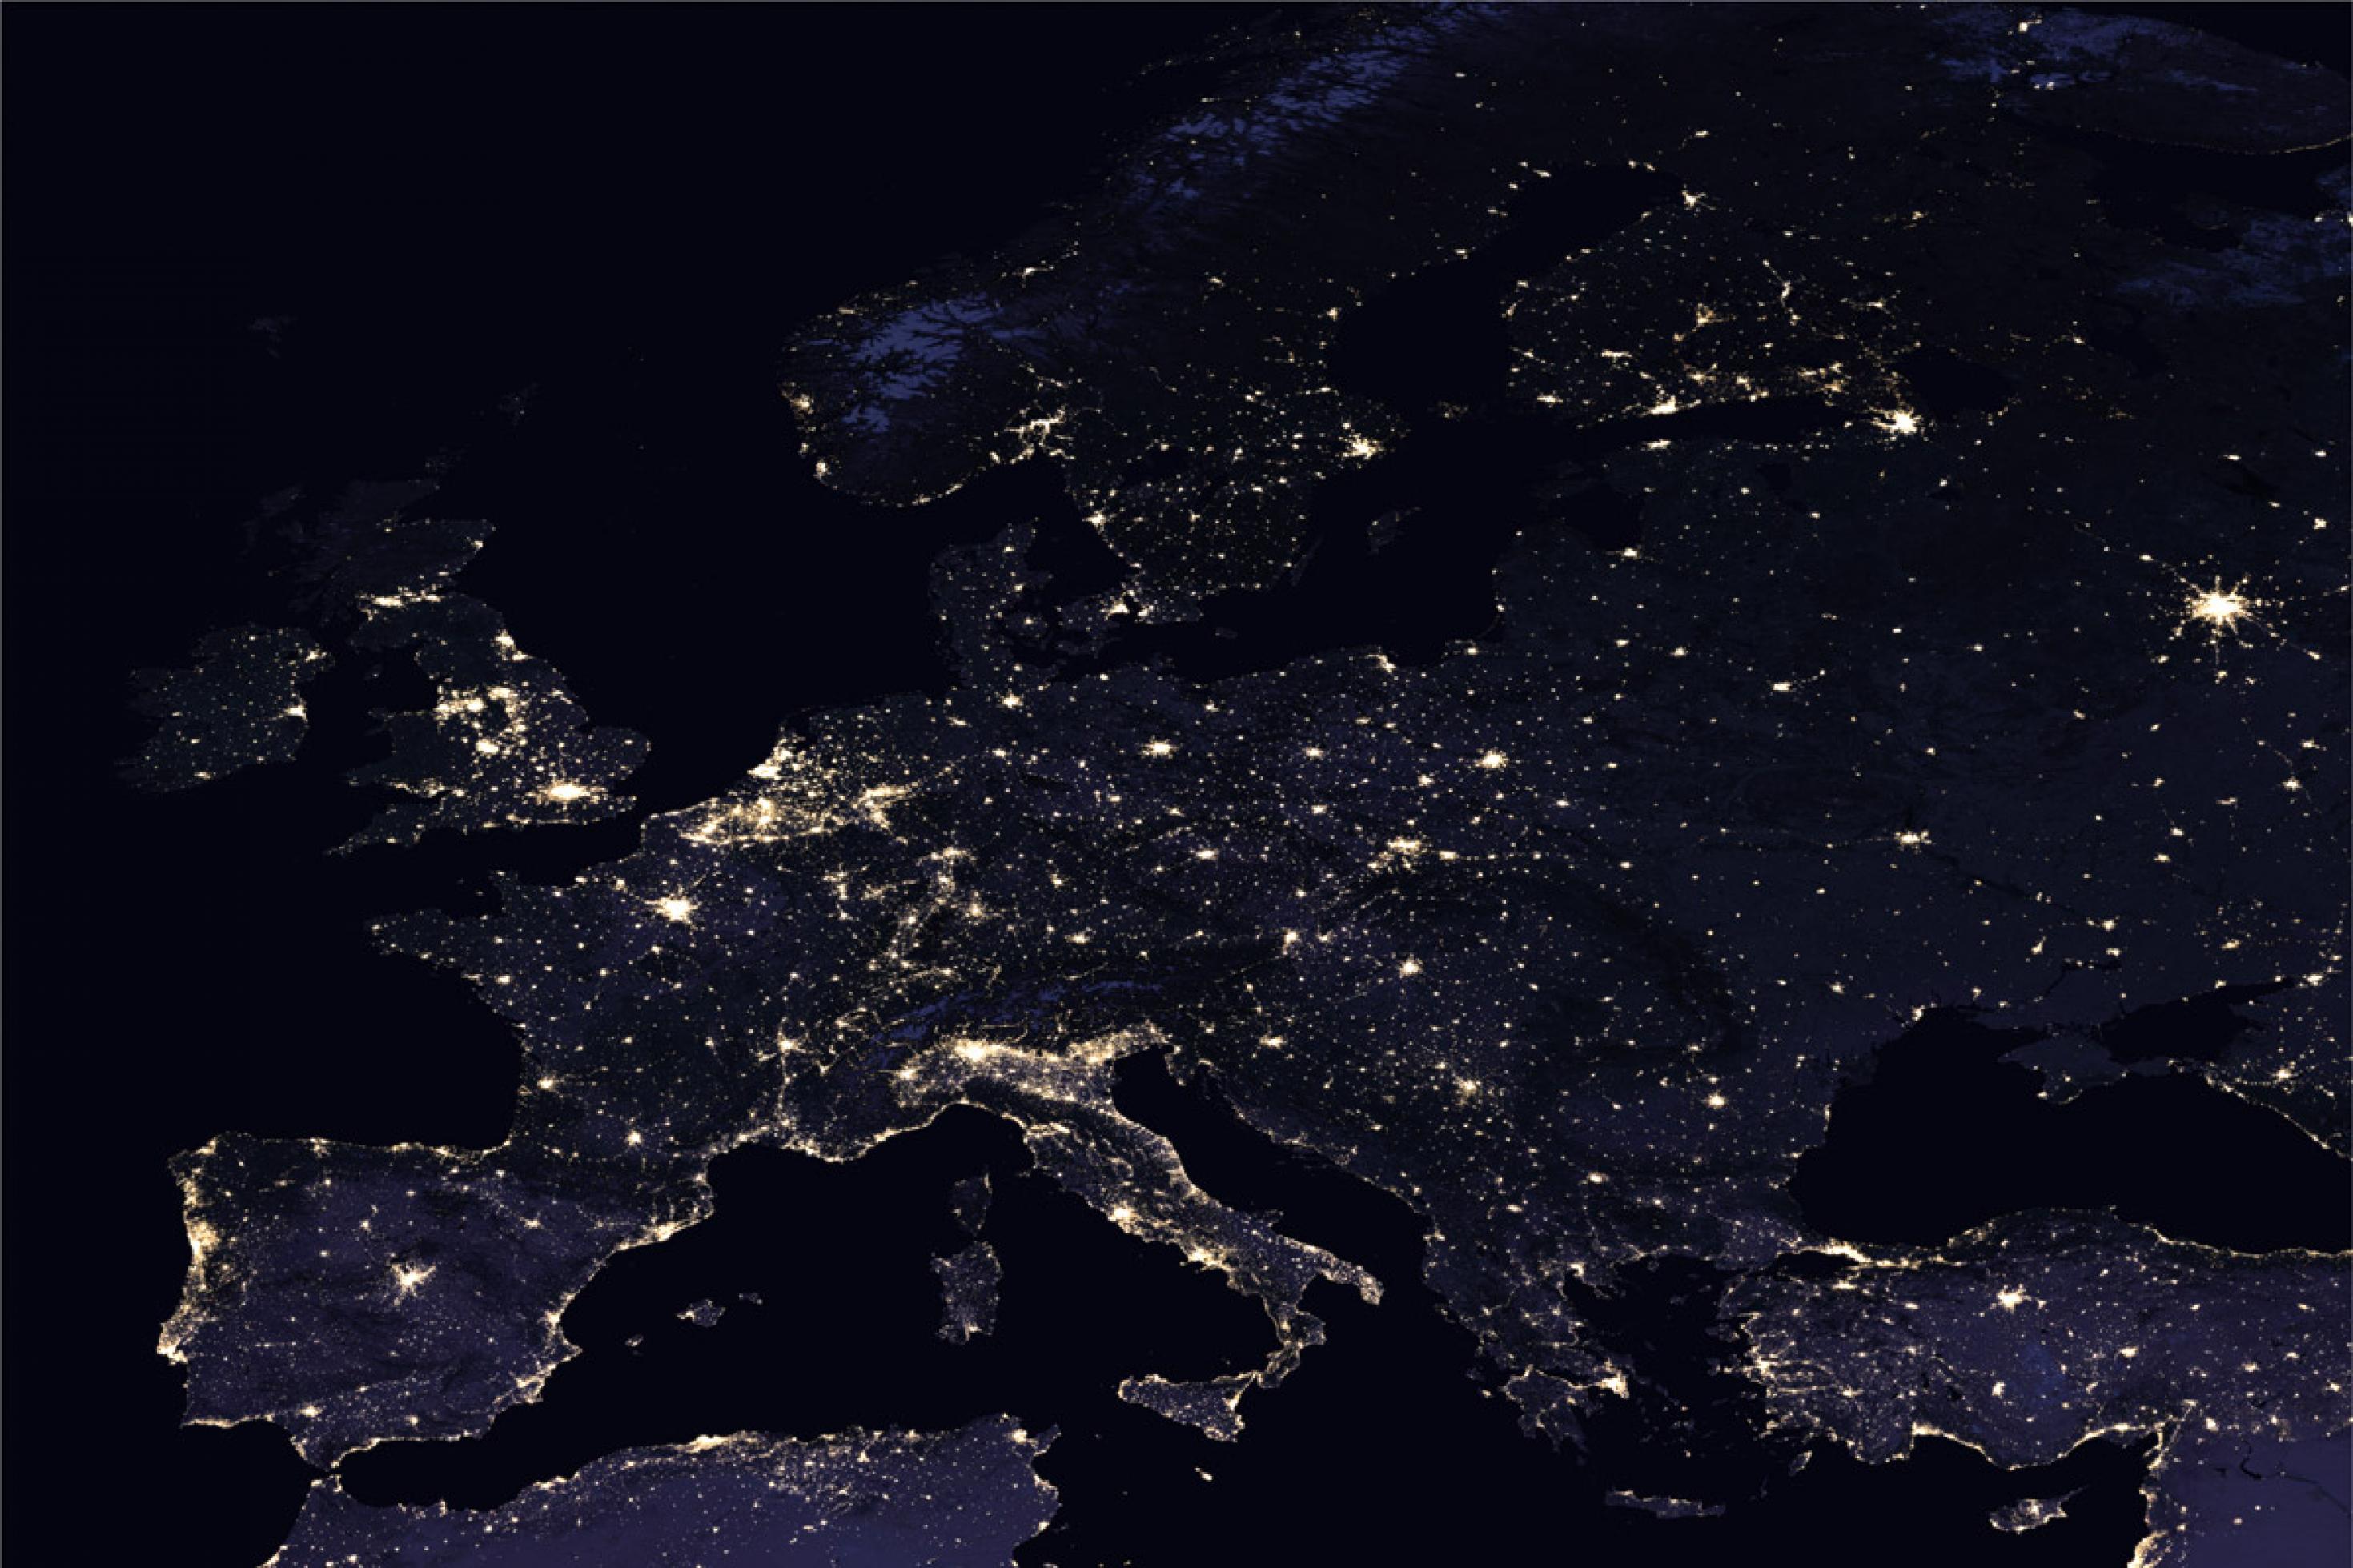 Europa von oben, aufgenommen bei Nacht. Man sieht Lichter, die leuchten.